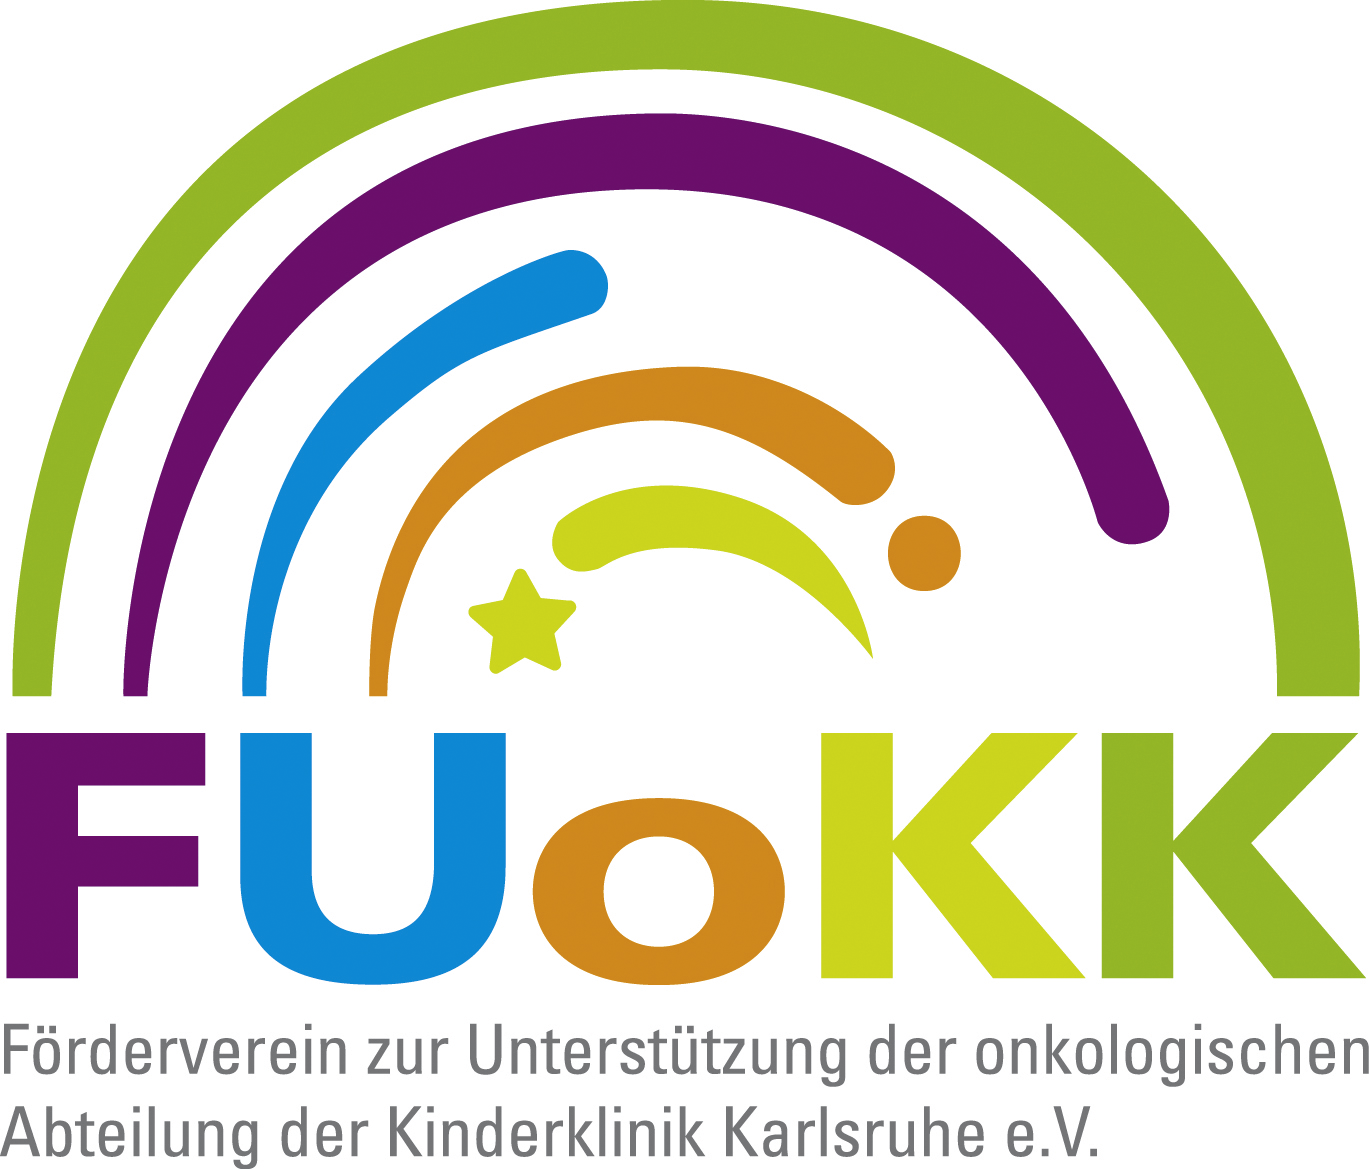 Förderverein zur Unterstützung der onkologischen Abteilung der Kinderklinik Karlsruhe e.V.